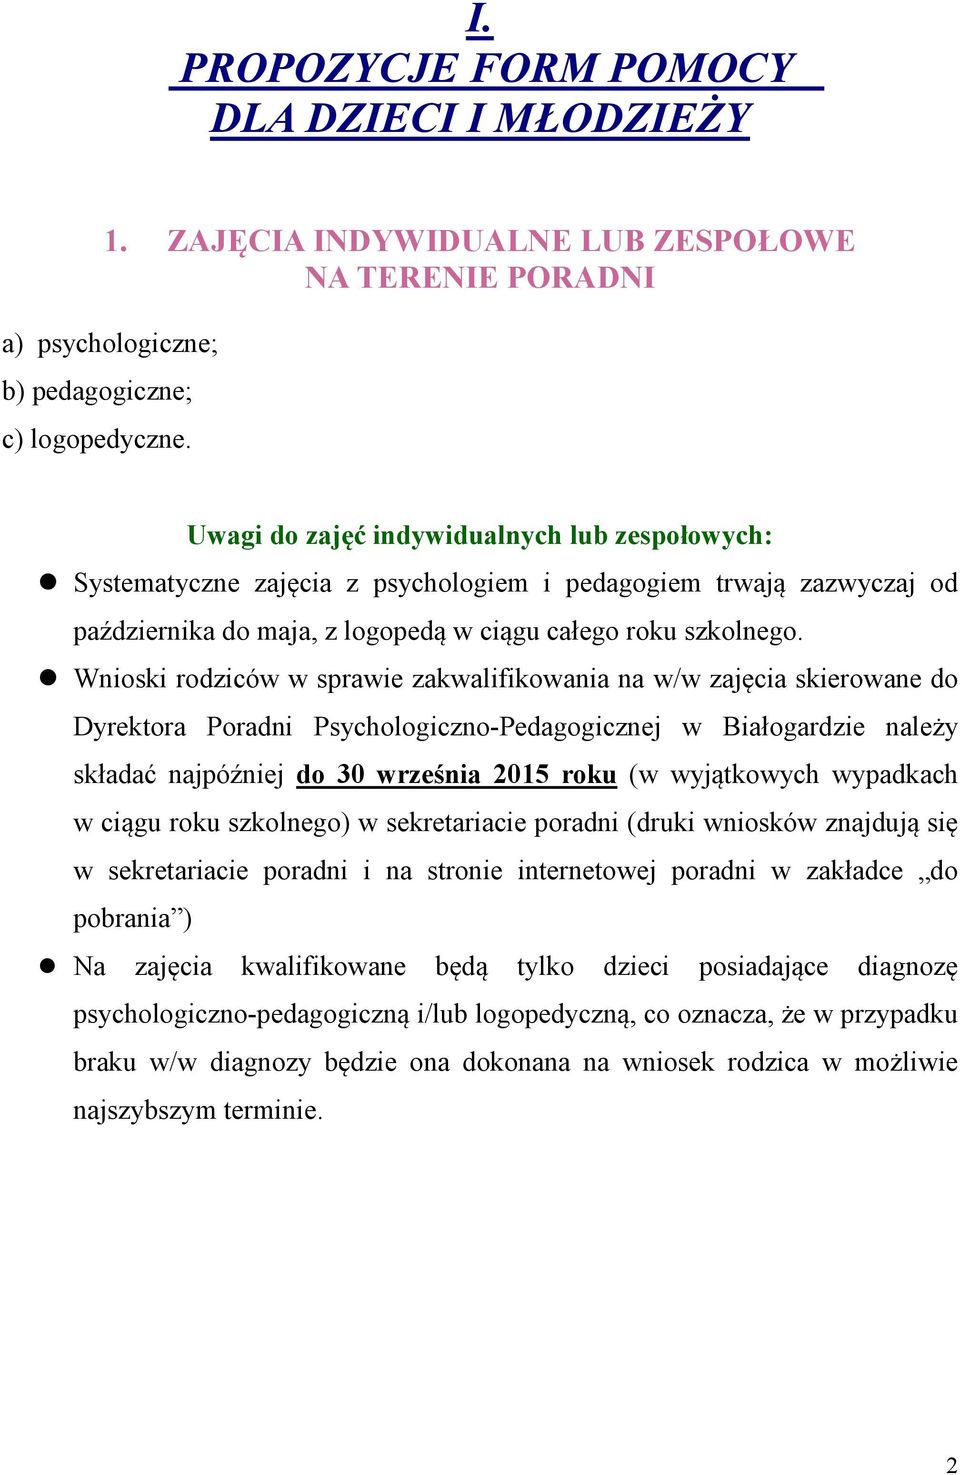 Wnioski rodziców w sprawie zakwalifikowania na w/w zajęcia skierowane do Dyrektora Poradni Psychologiczno-Pedagogicznej w Białogardzie należy składać najpóźniej do 30 września 2015 roku (w